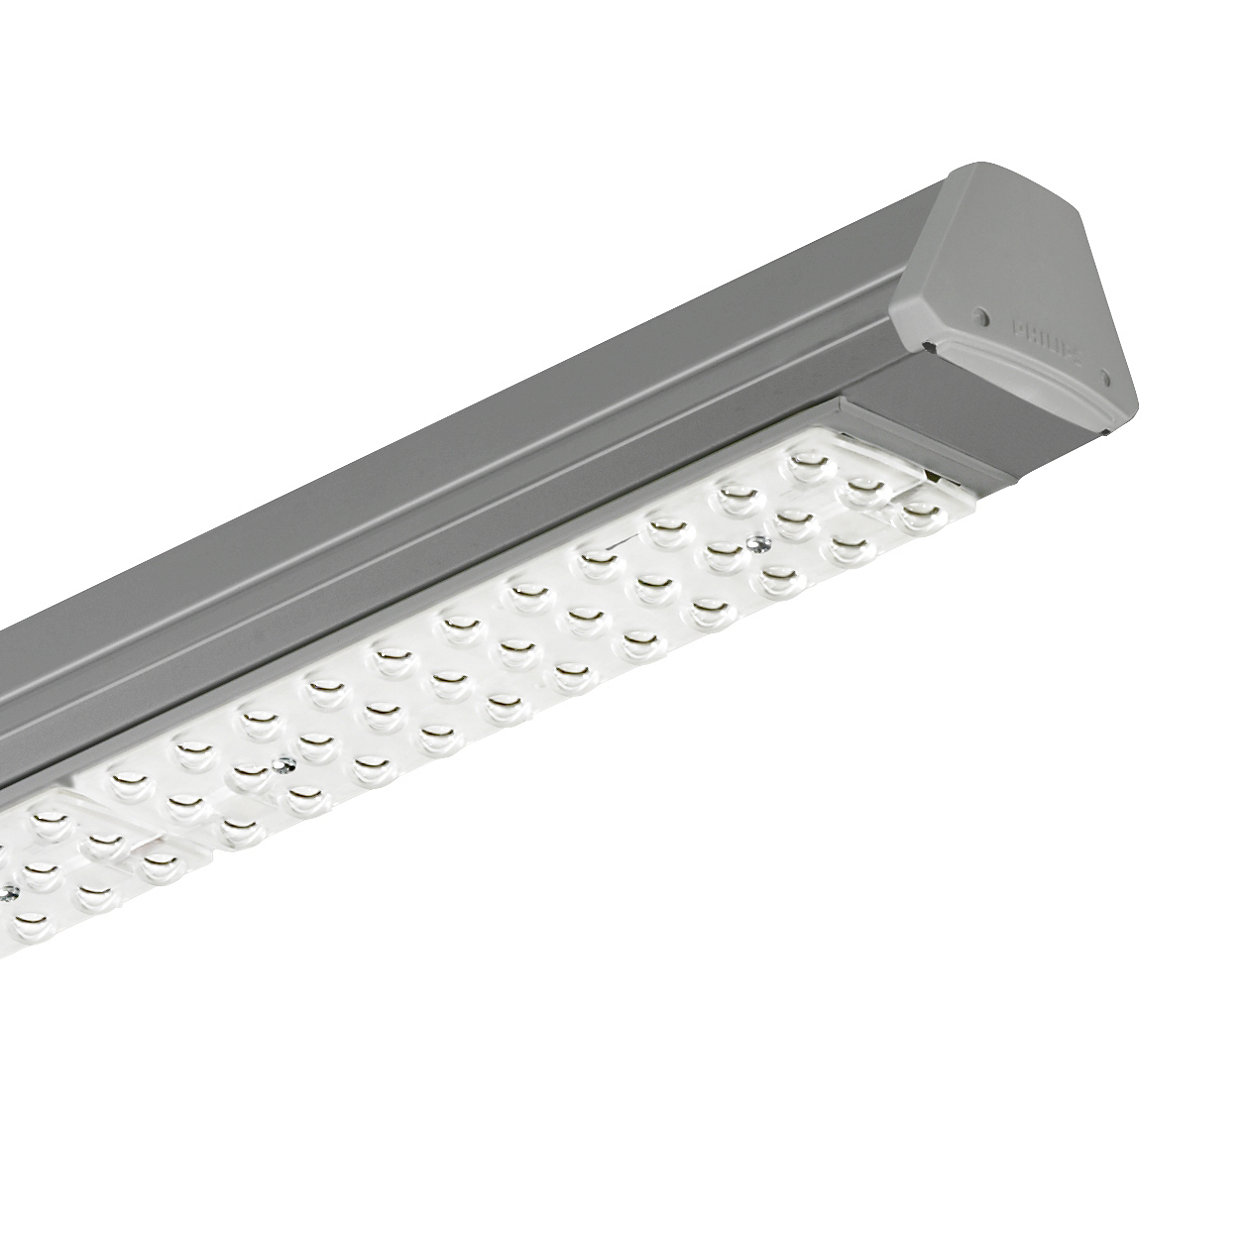 Maxos LED: solución innovadora y flexible que ofrece un rendimiento lumínico ideal